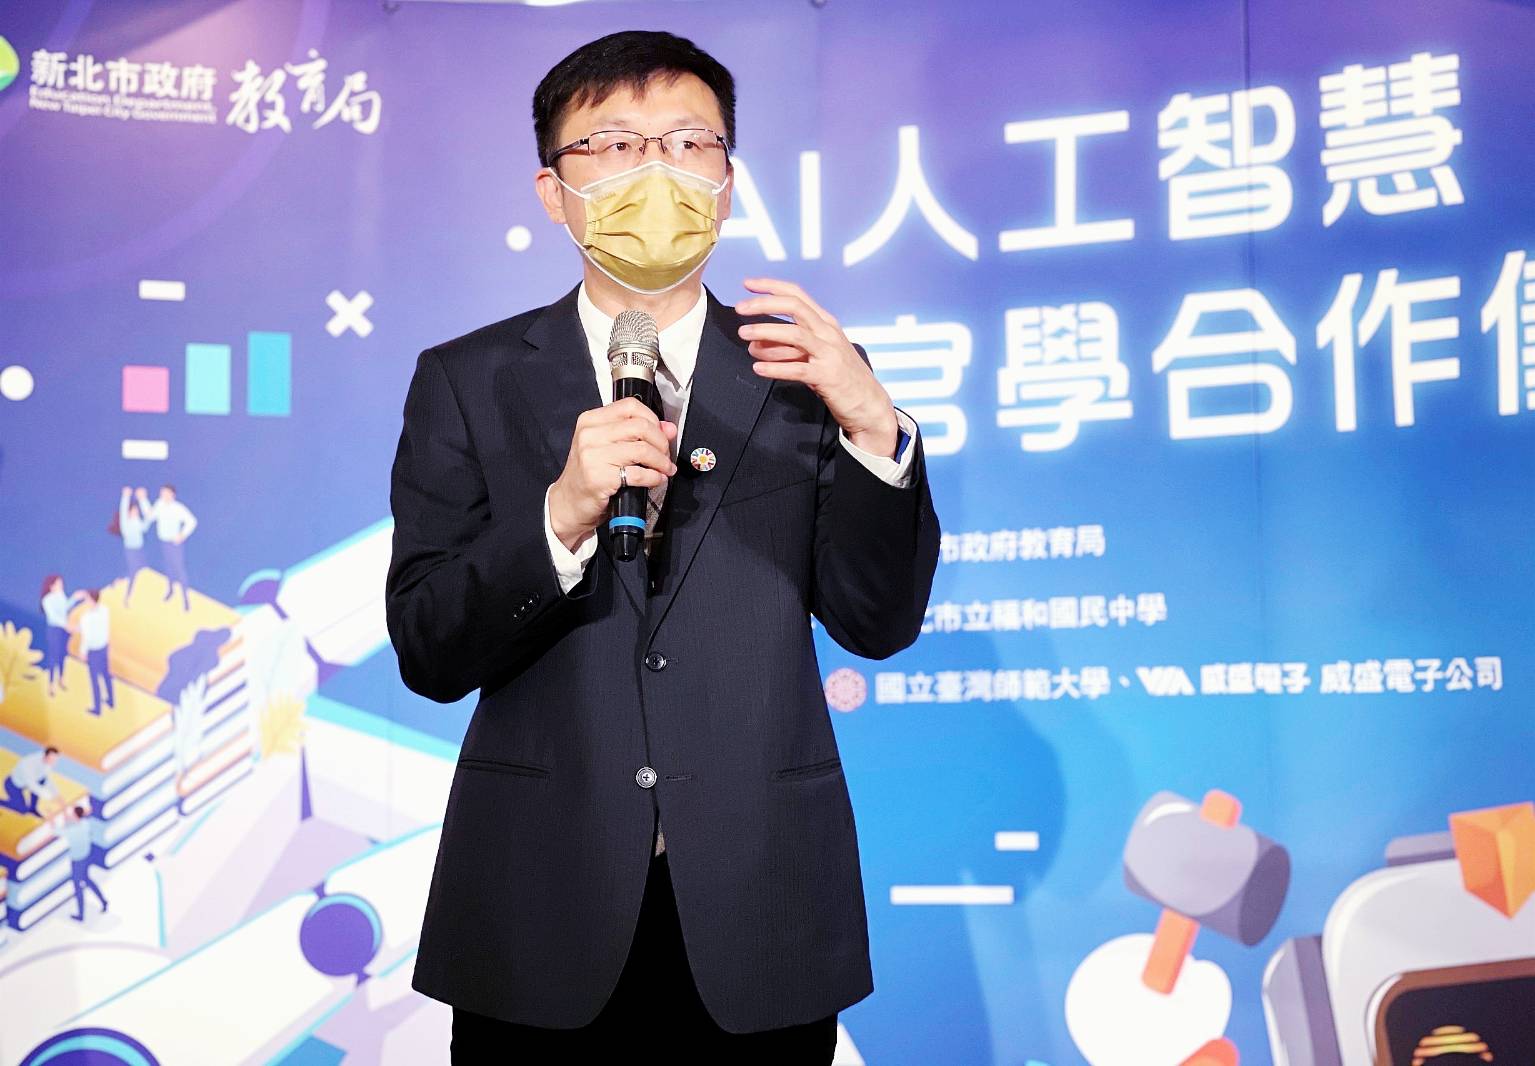 Pemerintah Kota Taipei akan terus mendorong perkembangan pendidikan AI dalam sistem pembelajaran kreasi inovatif dan teknologi. Sumber: Pemerintah Kota New Taipei